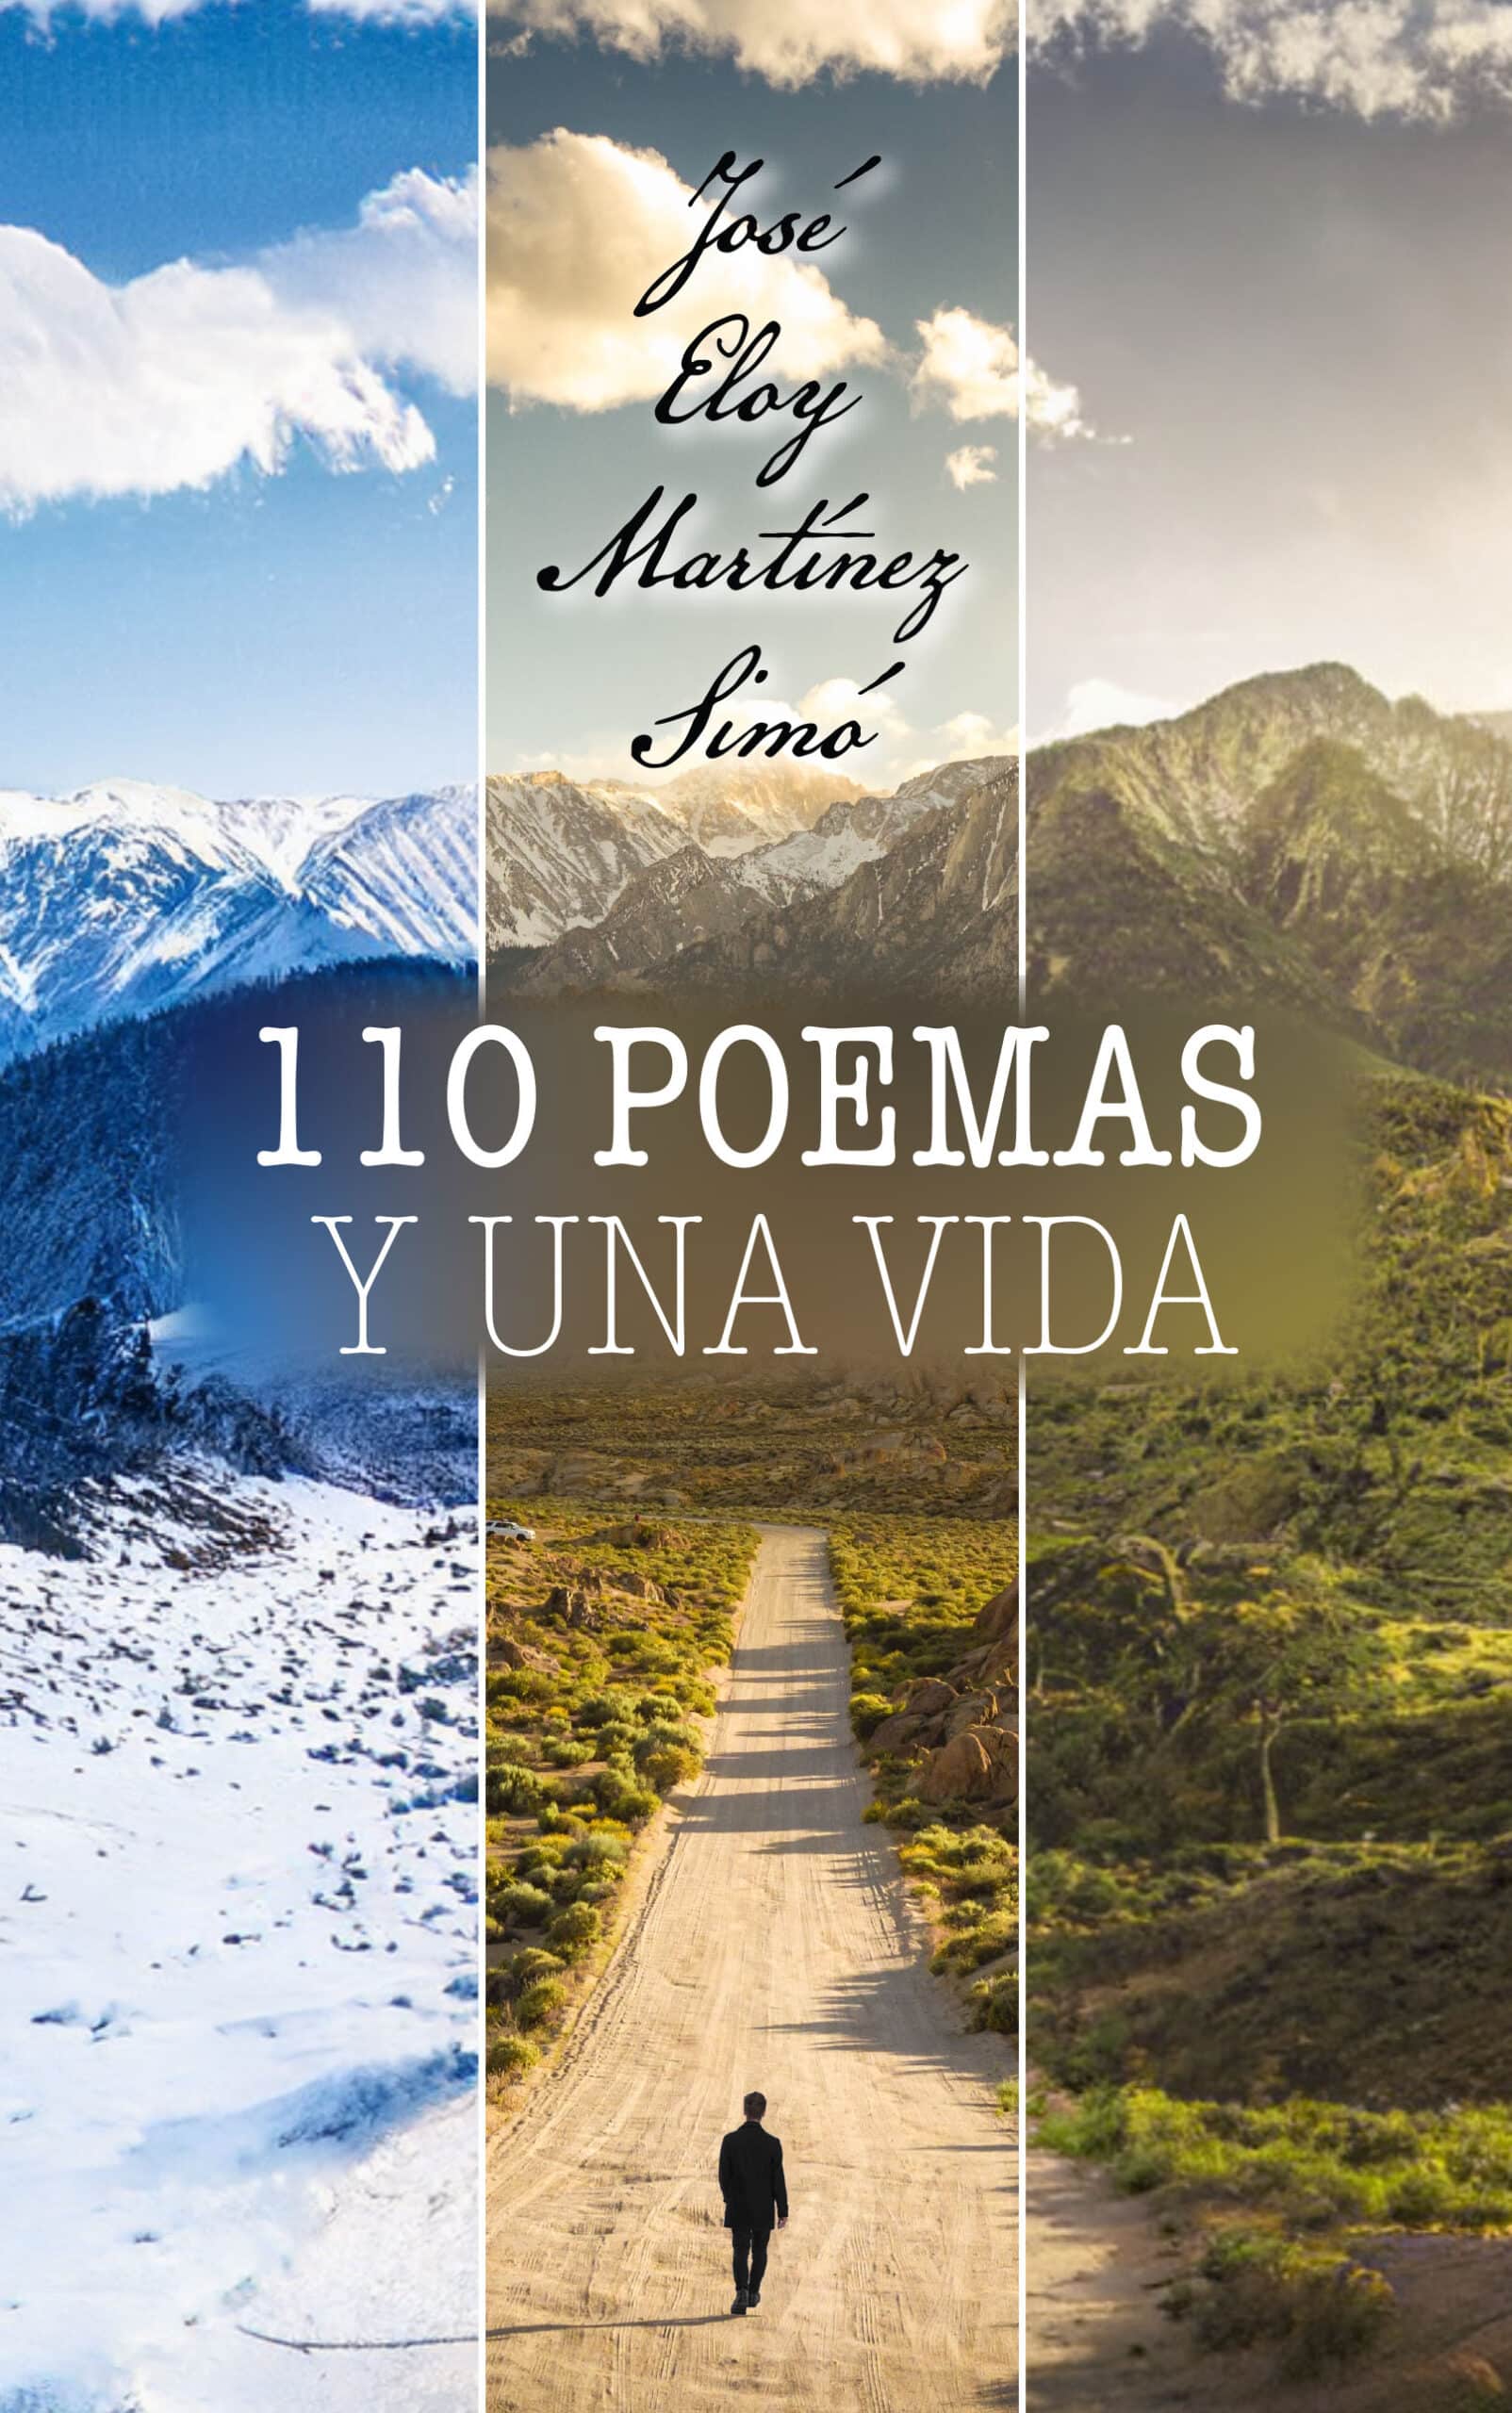 110 poemas y una vida, de José Eloy Martínez Simó